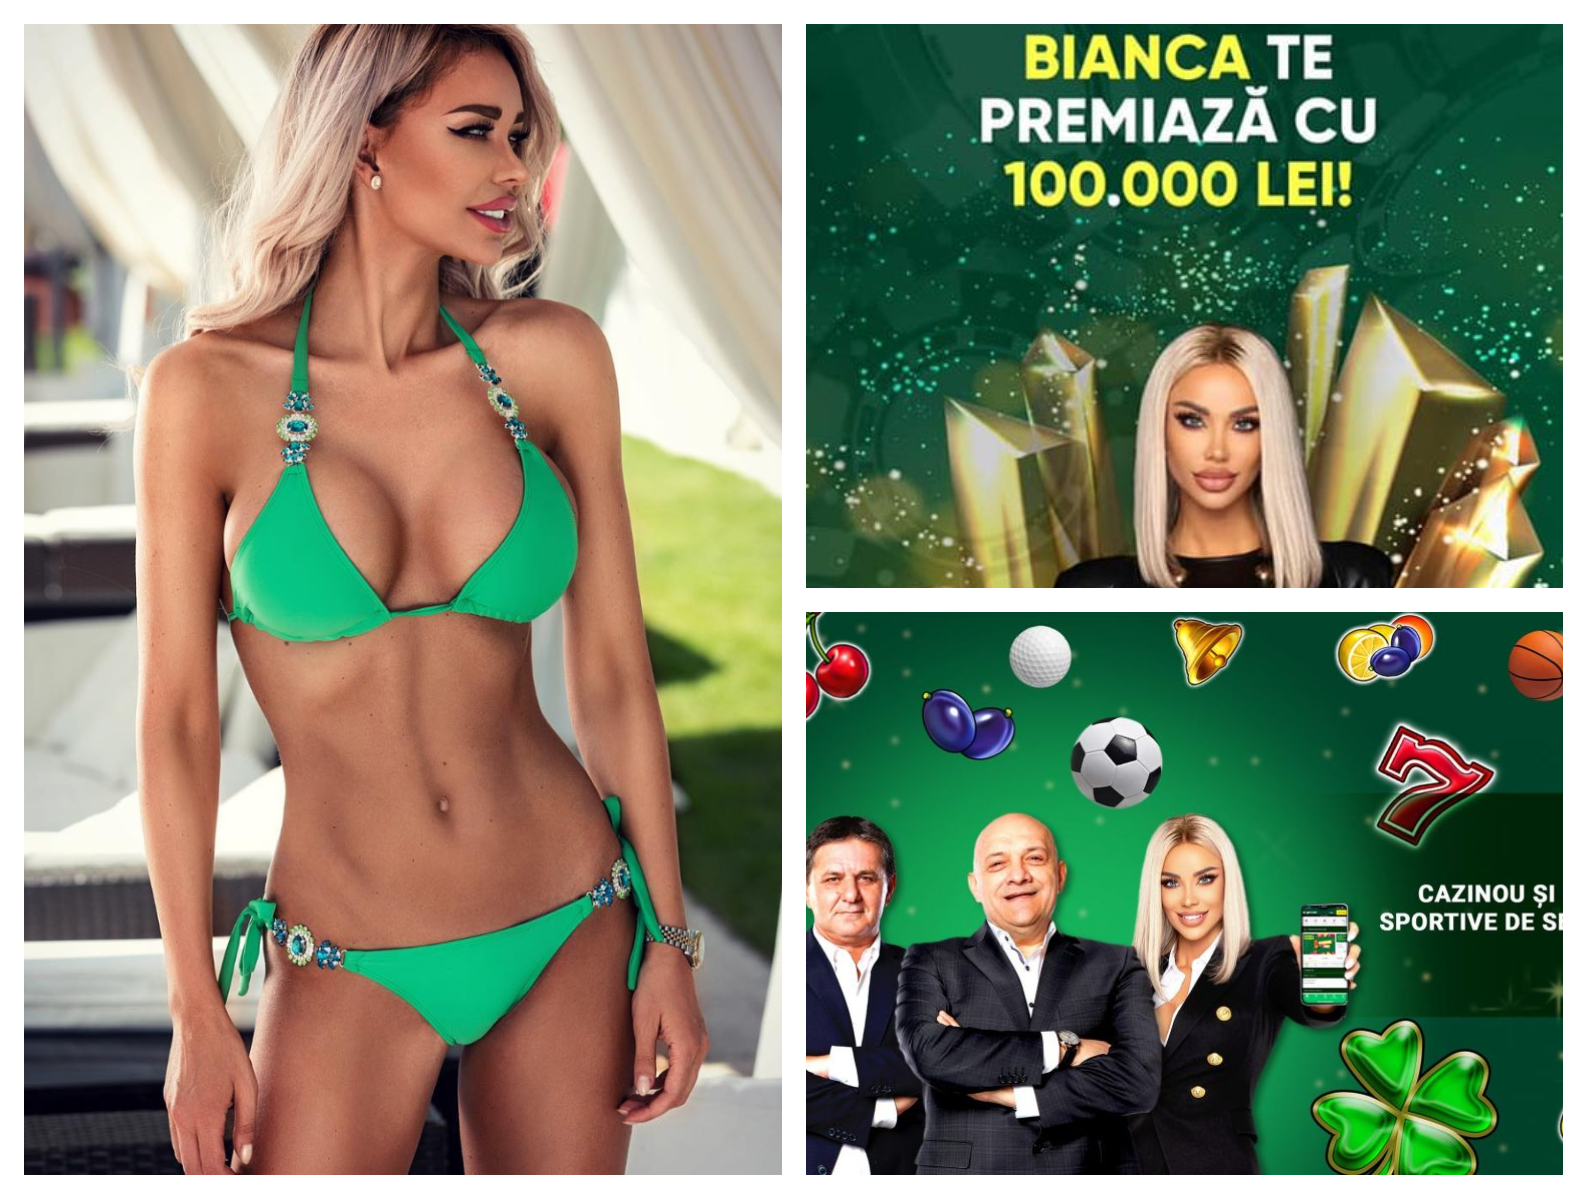 Bianca Drăgușanu, revoltată după restricționarea reclamelor la jocurile de noroc: ”Eu vreau să muncesc!”